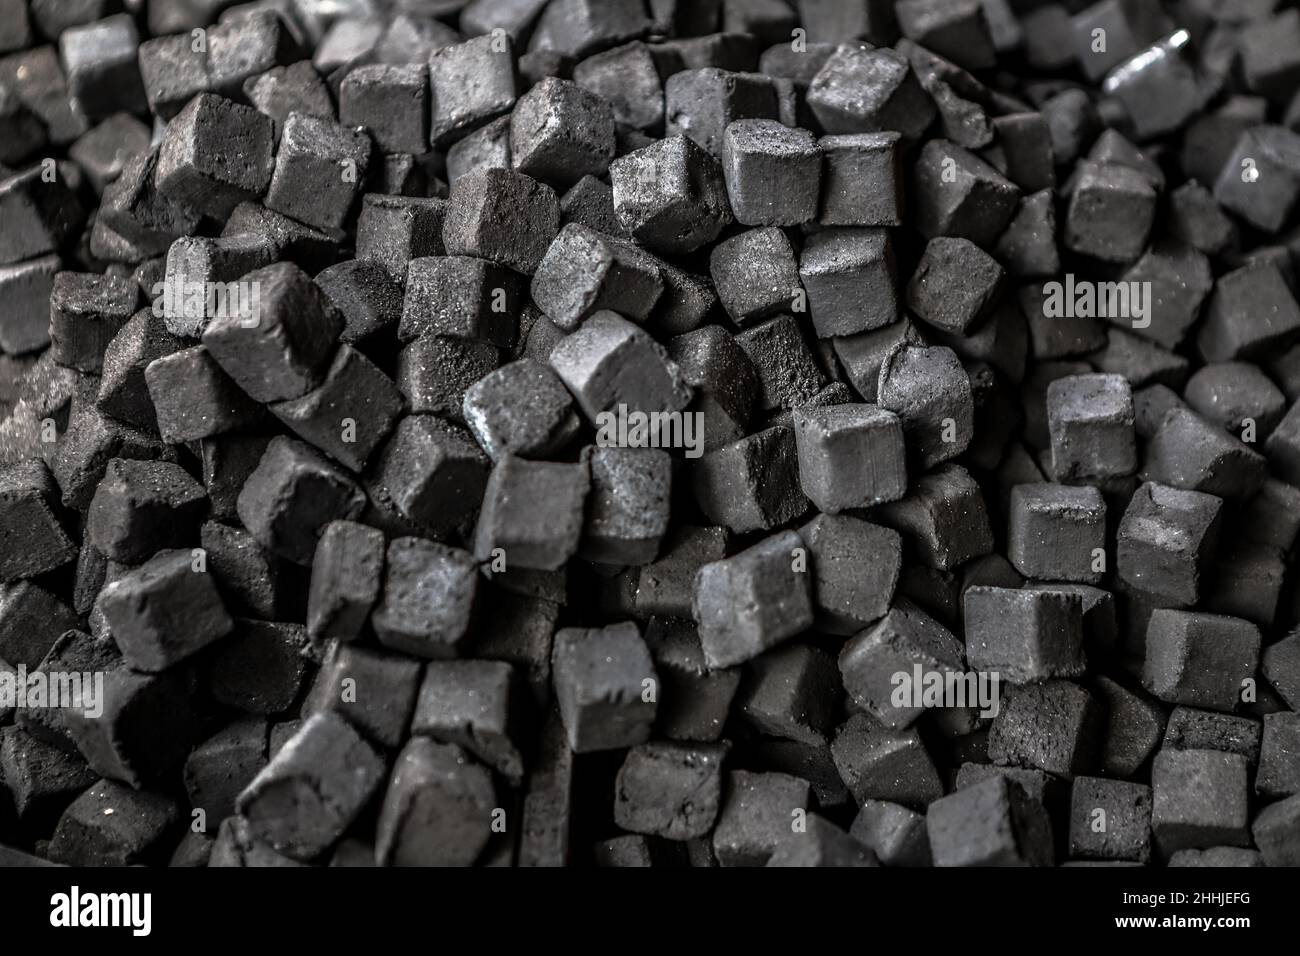 Carbone shisha immagini e fotografie stock ad alta risoluzione - Alamy